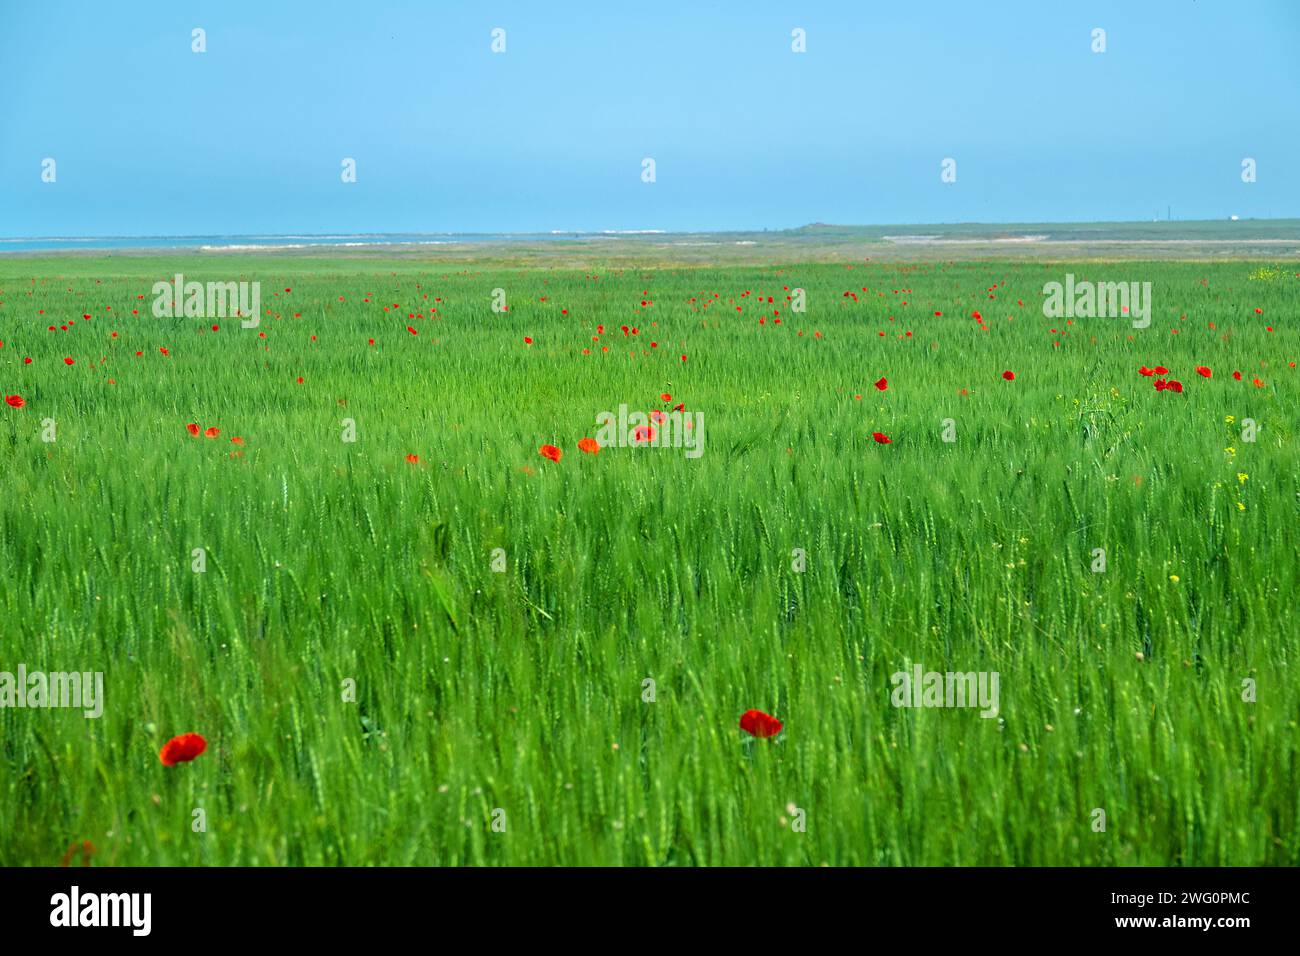 Flache Steppe am Ufer des Sees Sivash auf der Halbinsel Kerch. Ein Weizenfeld mit violetten Flecken von rotem Mohn. Maismohn (Papaver Rhoeas) als wir Stockfoto